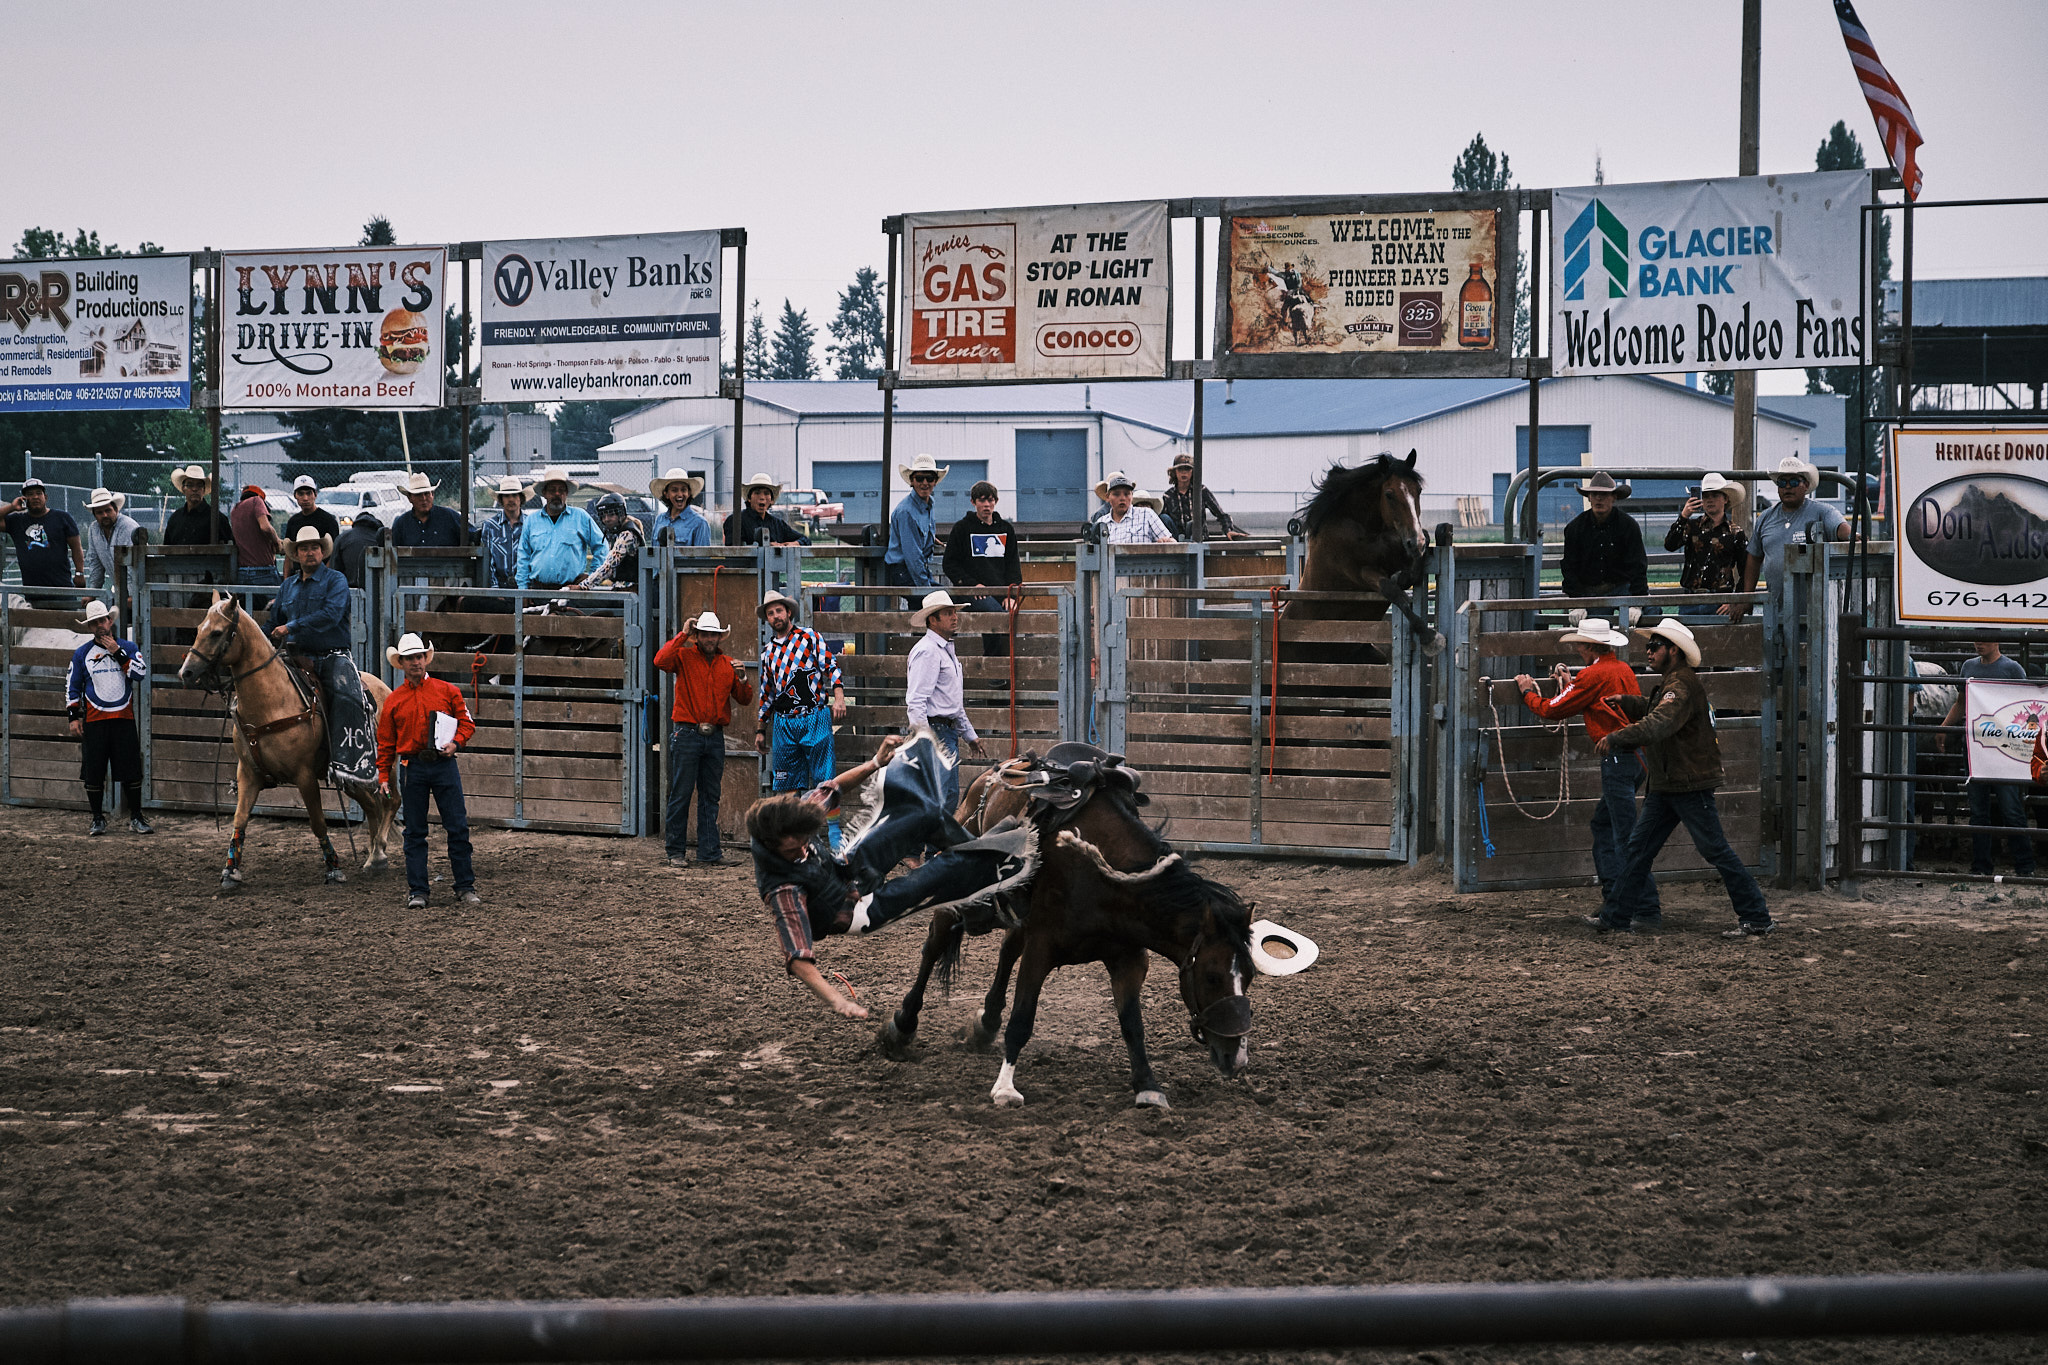 A cowboy falls off his horse